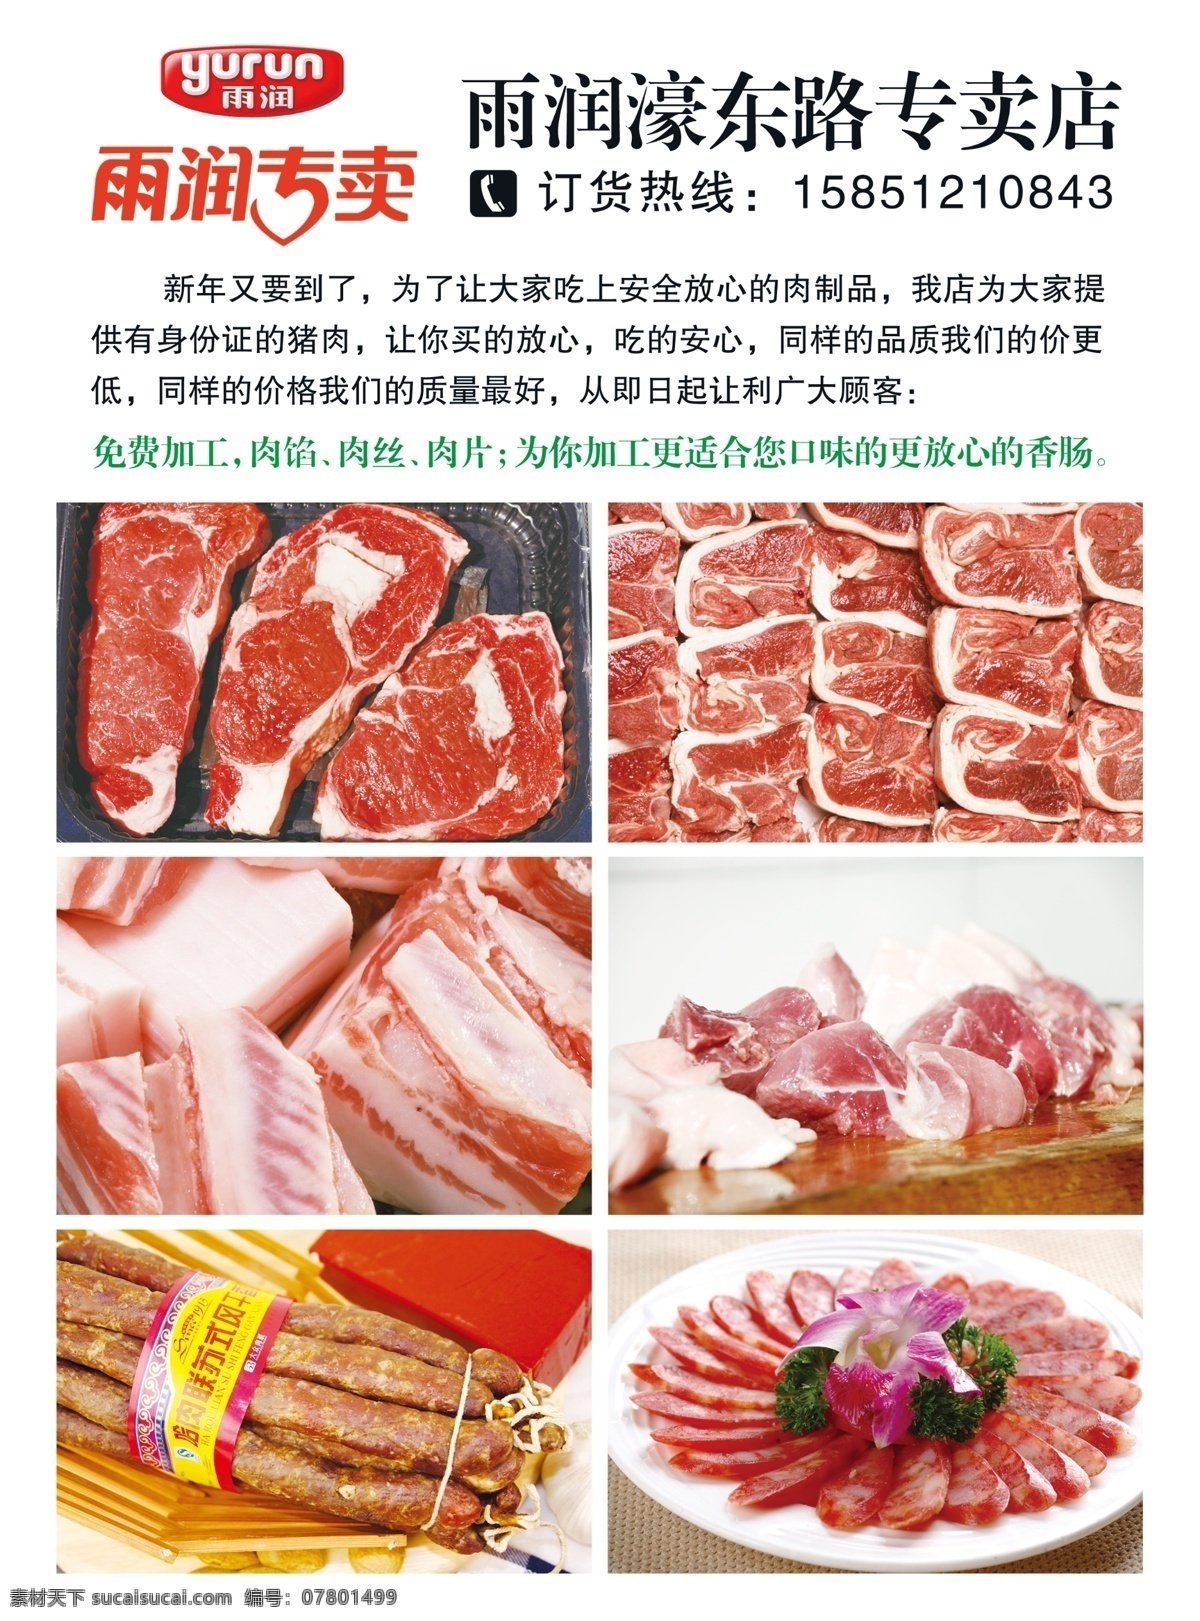 雨润肉专卖 雨润 肉 食品 放心肉 猪肉 宣传单